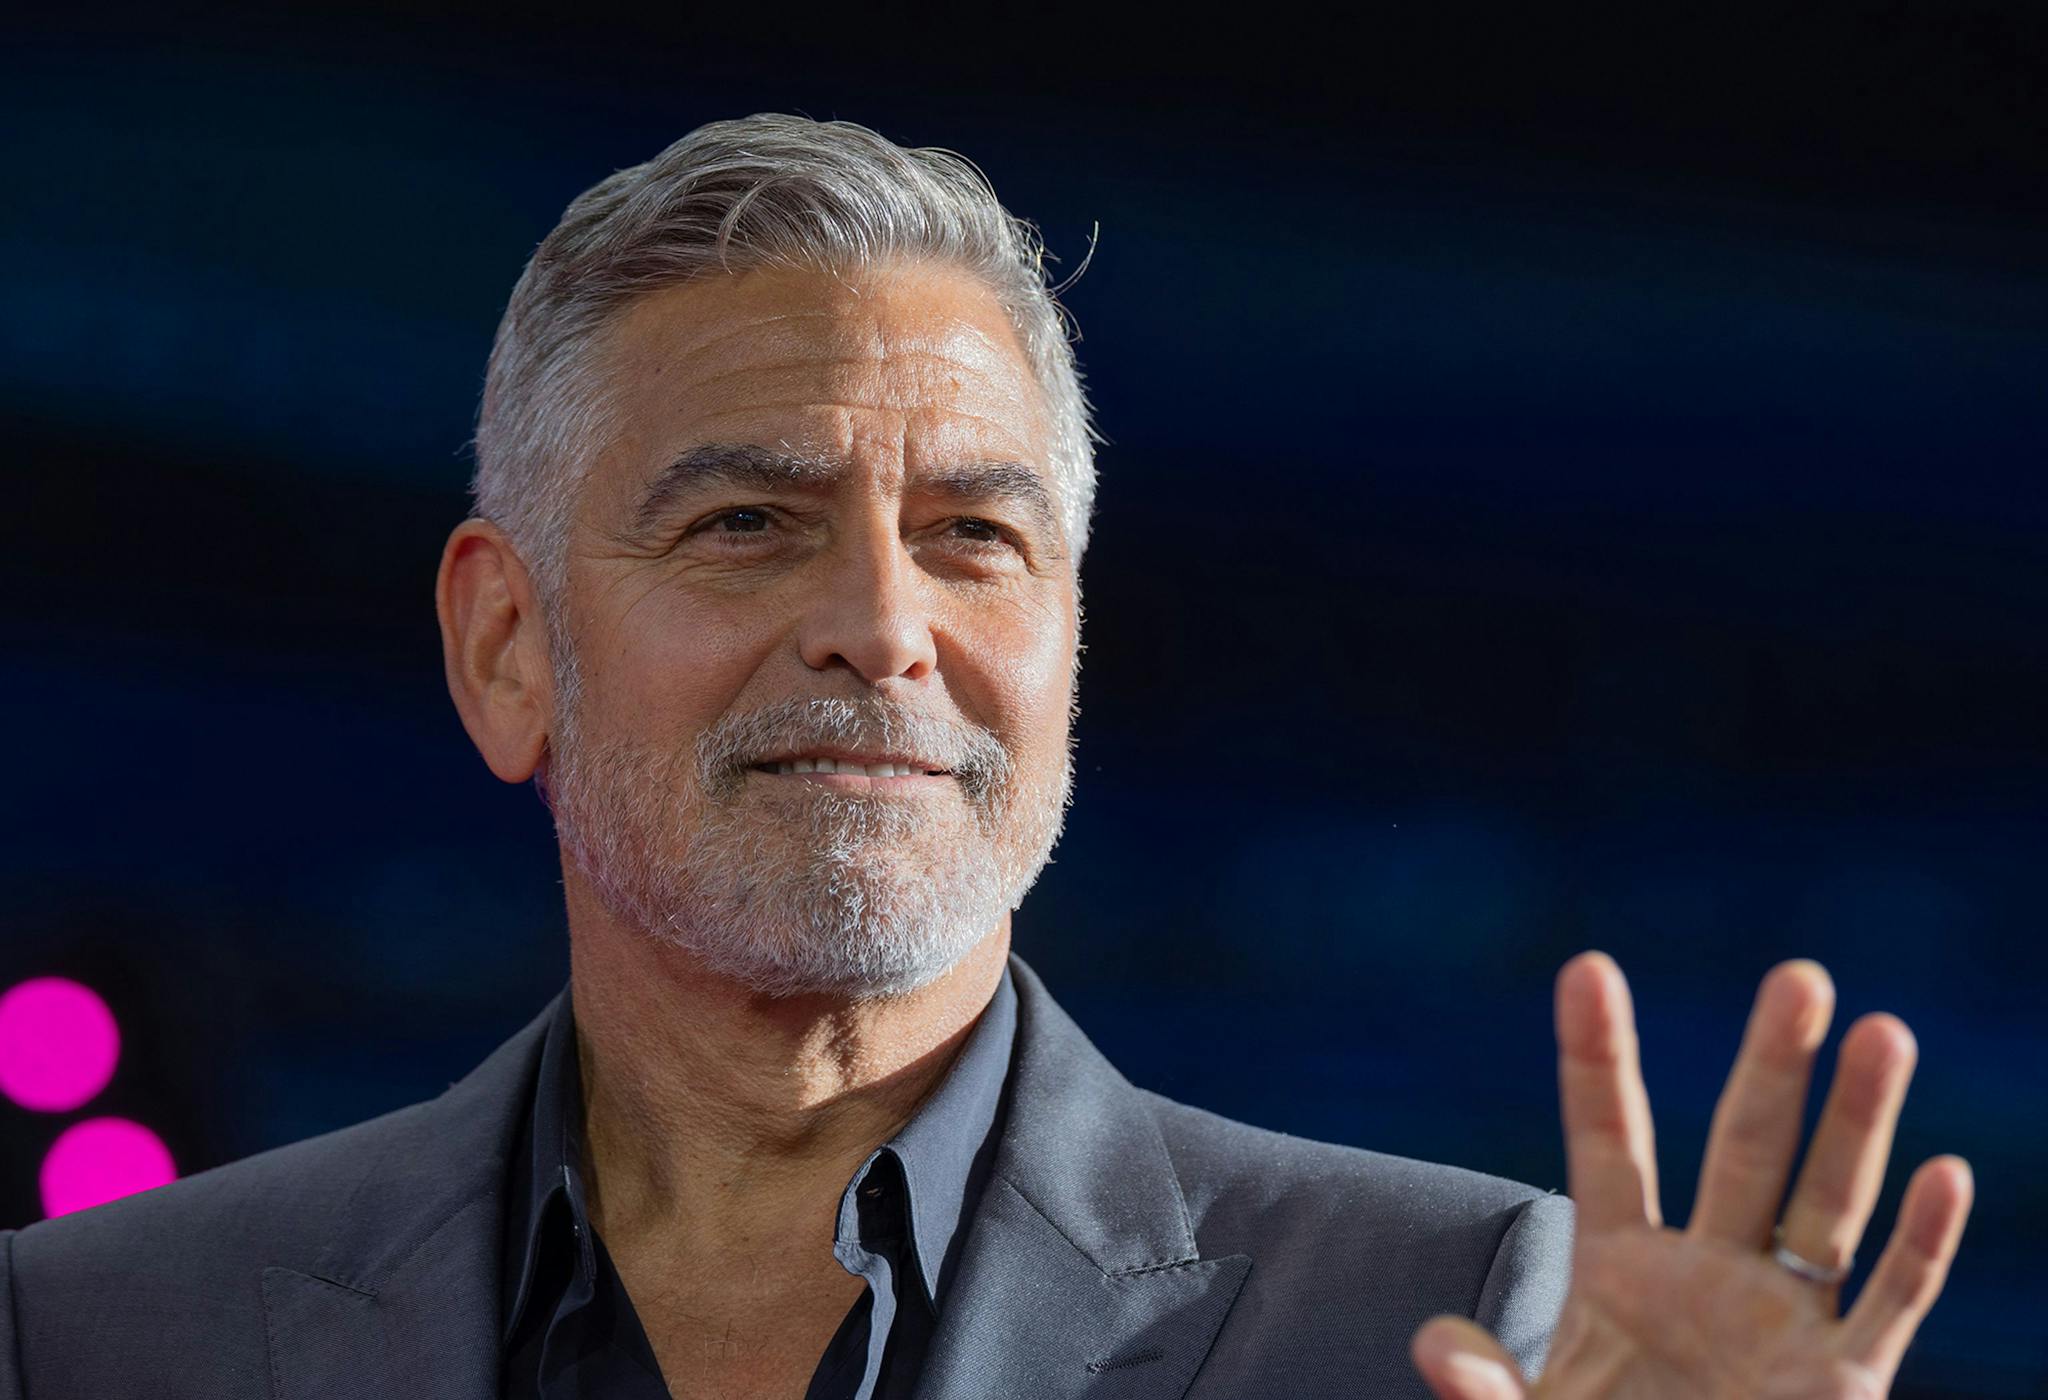 El actor George Clooney, junto a otras estrellas de Hollywood, ha propuesto al sindicato de actores una eliminación del tope de la cuota para contribuir más